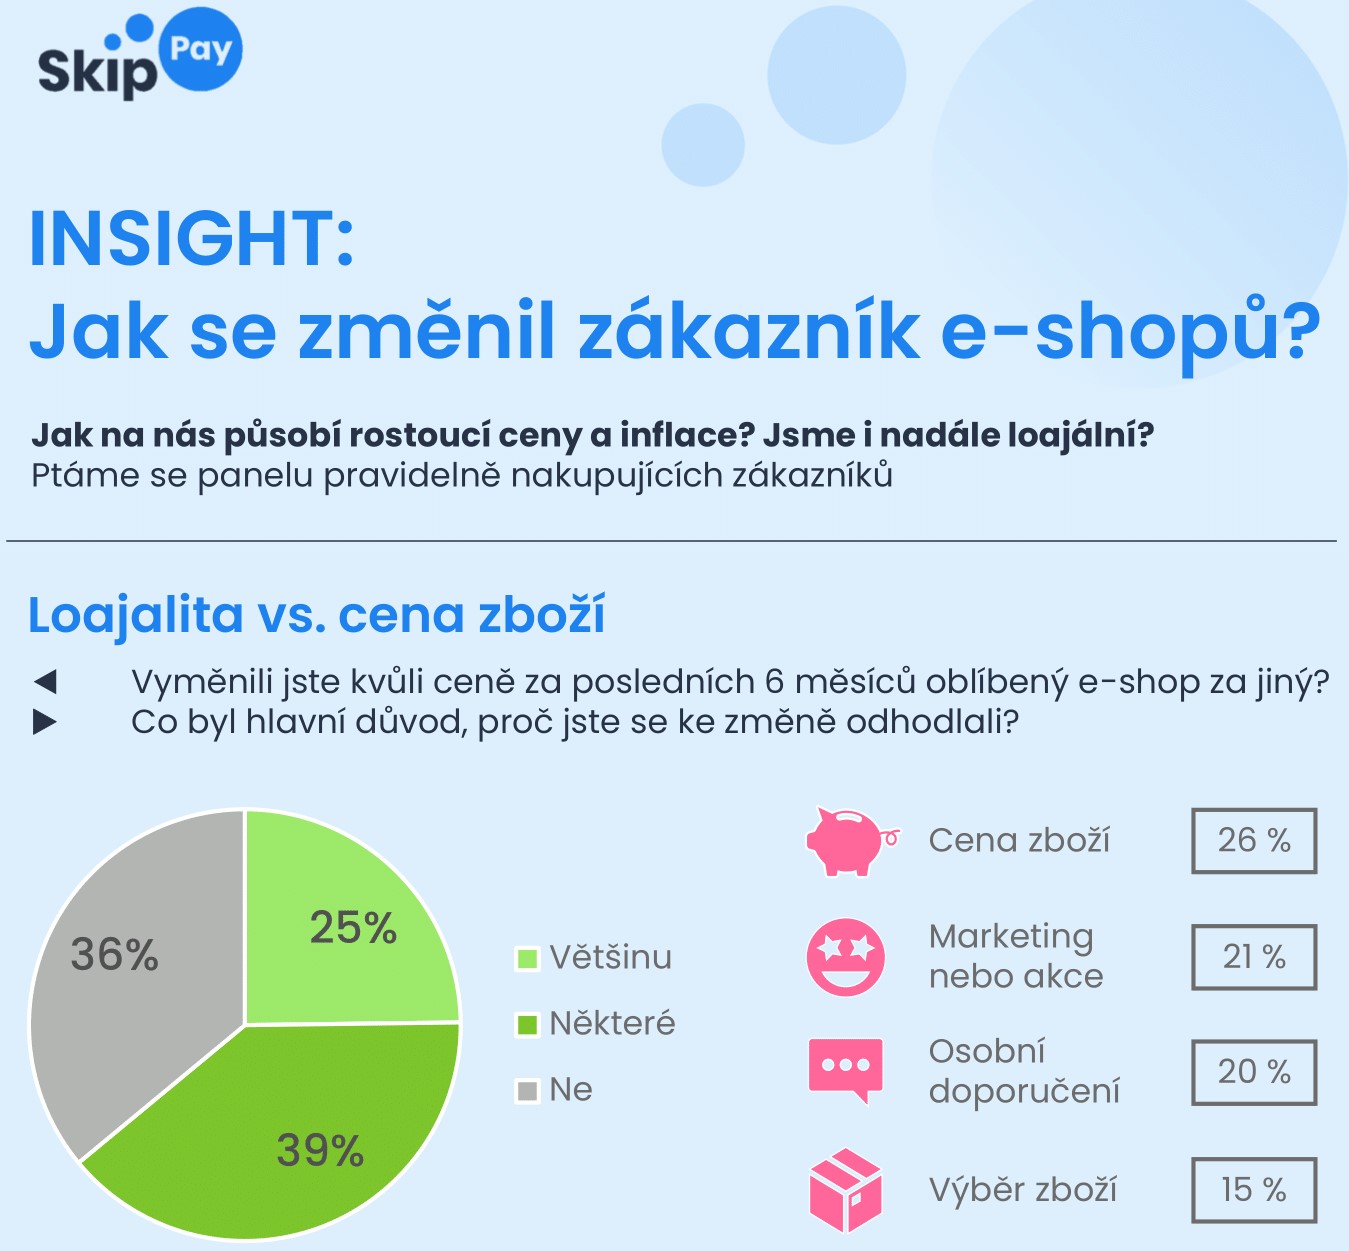 Zdražování mění zákazníky e-shopů. 64 % už vyměnilo oblíbený e-shop za jiný kvůli cenám, za „předraženost“ padají negativní recenze